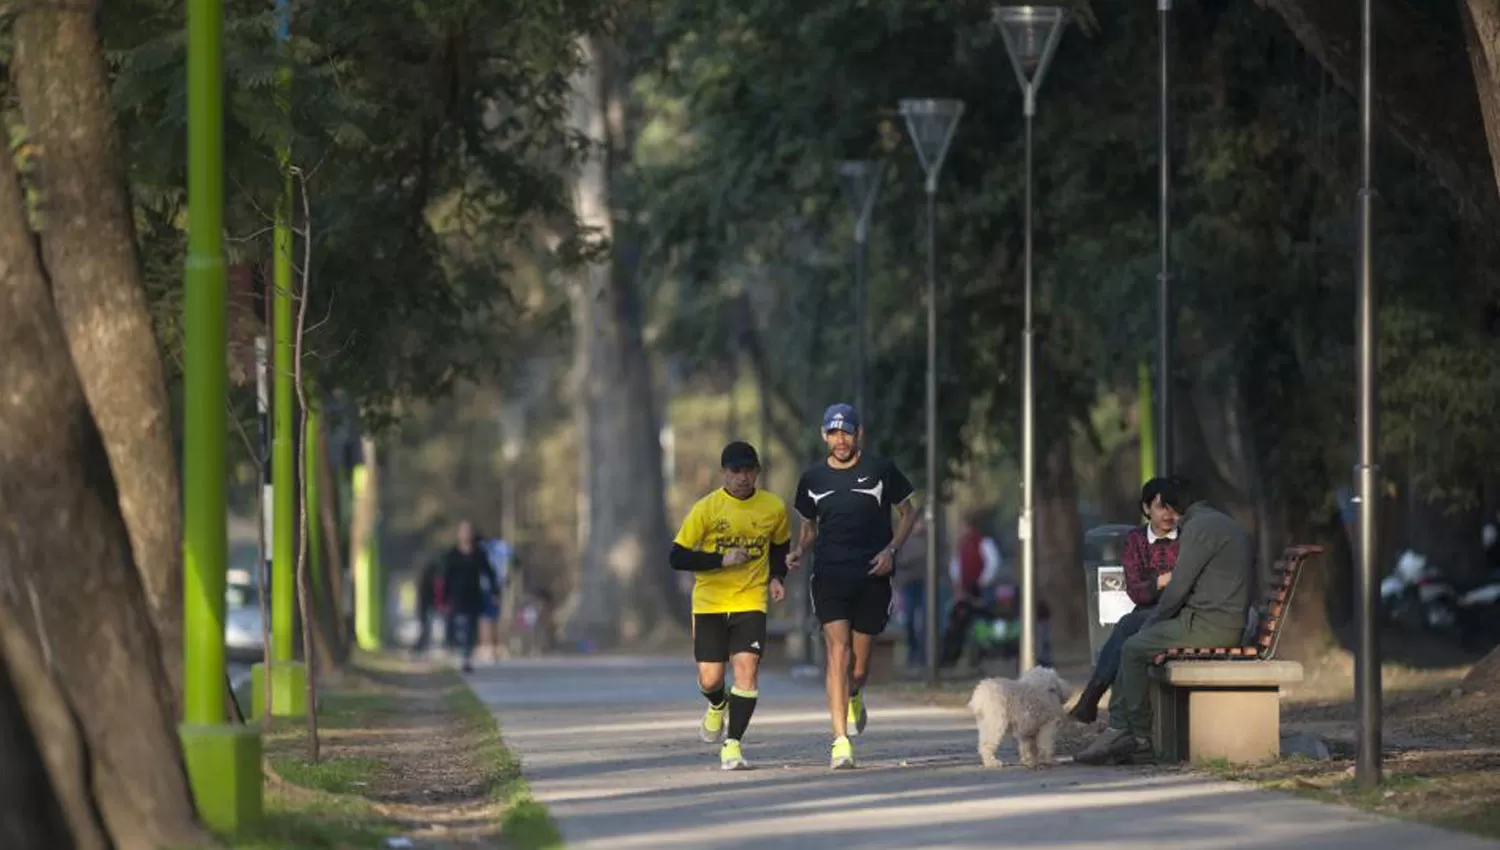 AL AIRE LIBRE. El parque Avellaneda es el lugar elegido por muchos tucumanos para practicar deportes. ARCHIVO